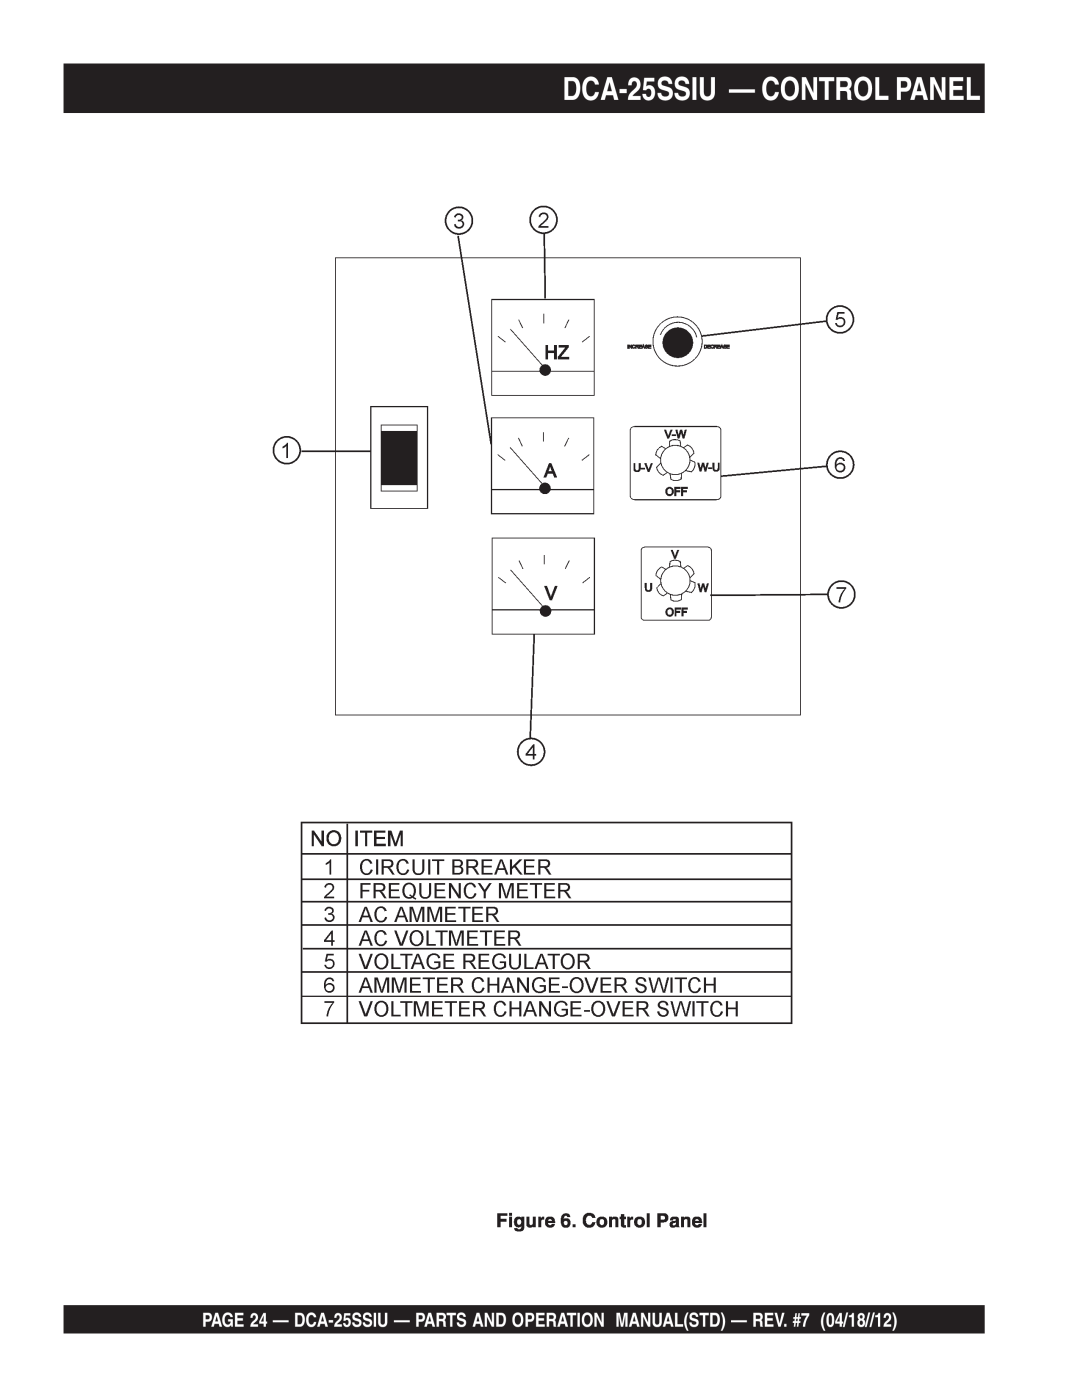 Multiquip DCA25SSIU manual DCA-25SSIU- CONTROL PANEL, Control Panel 